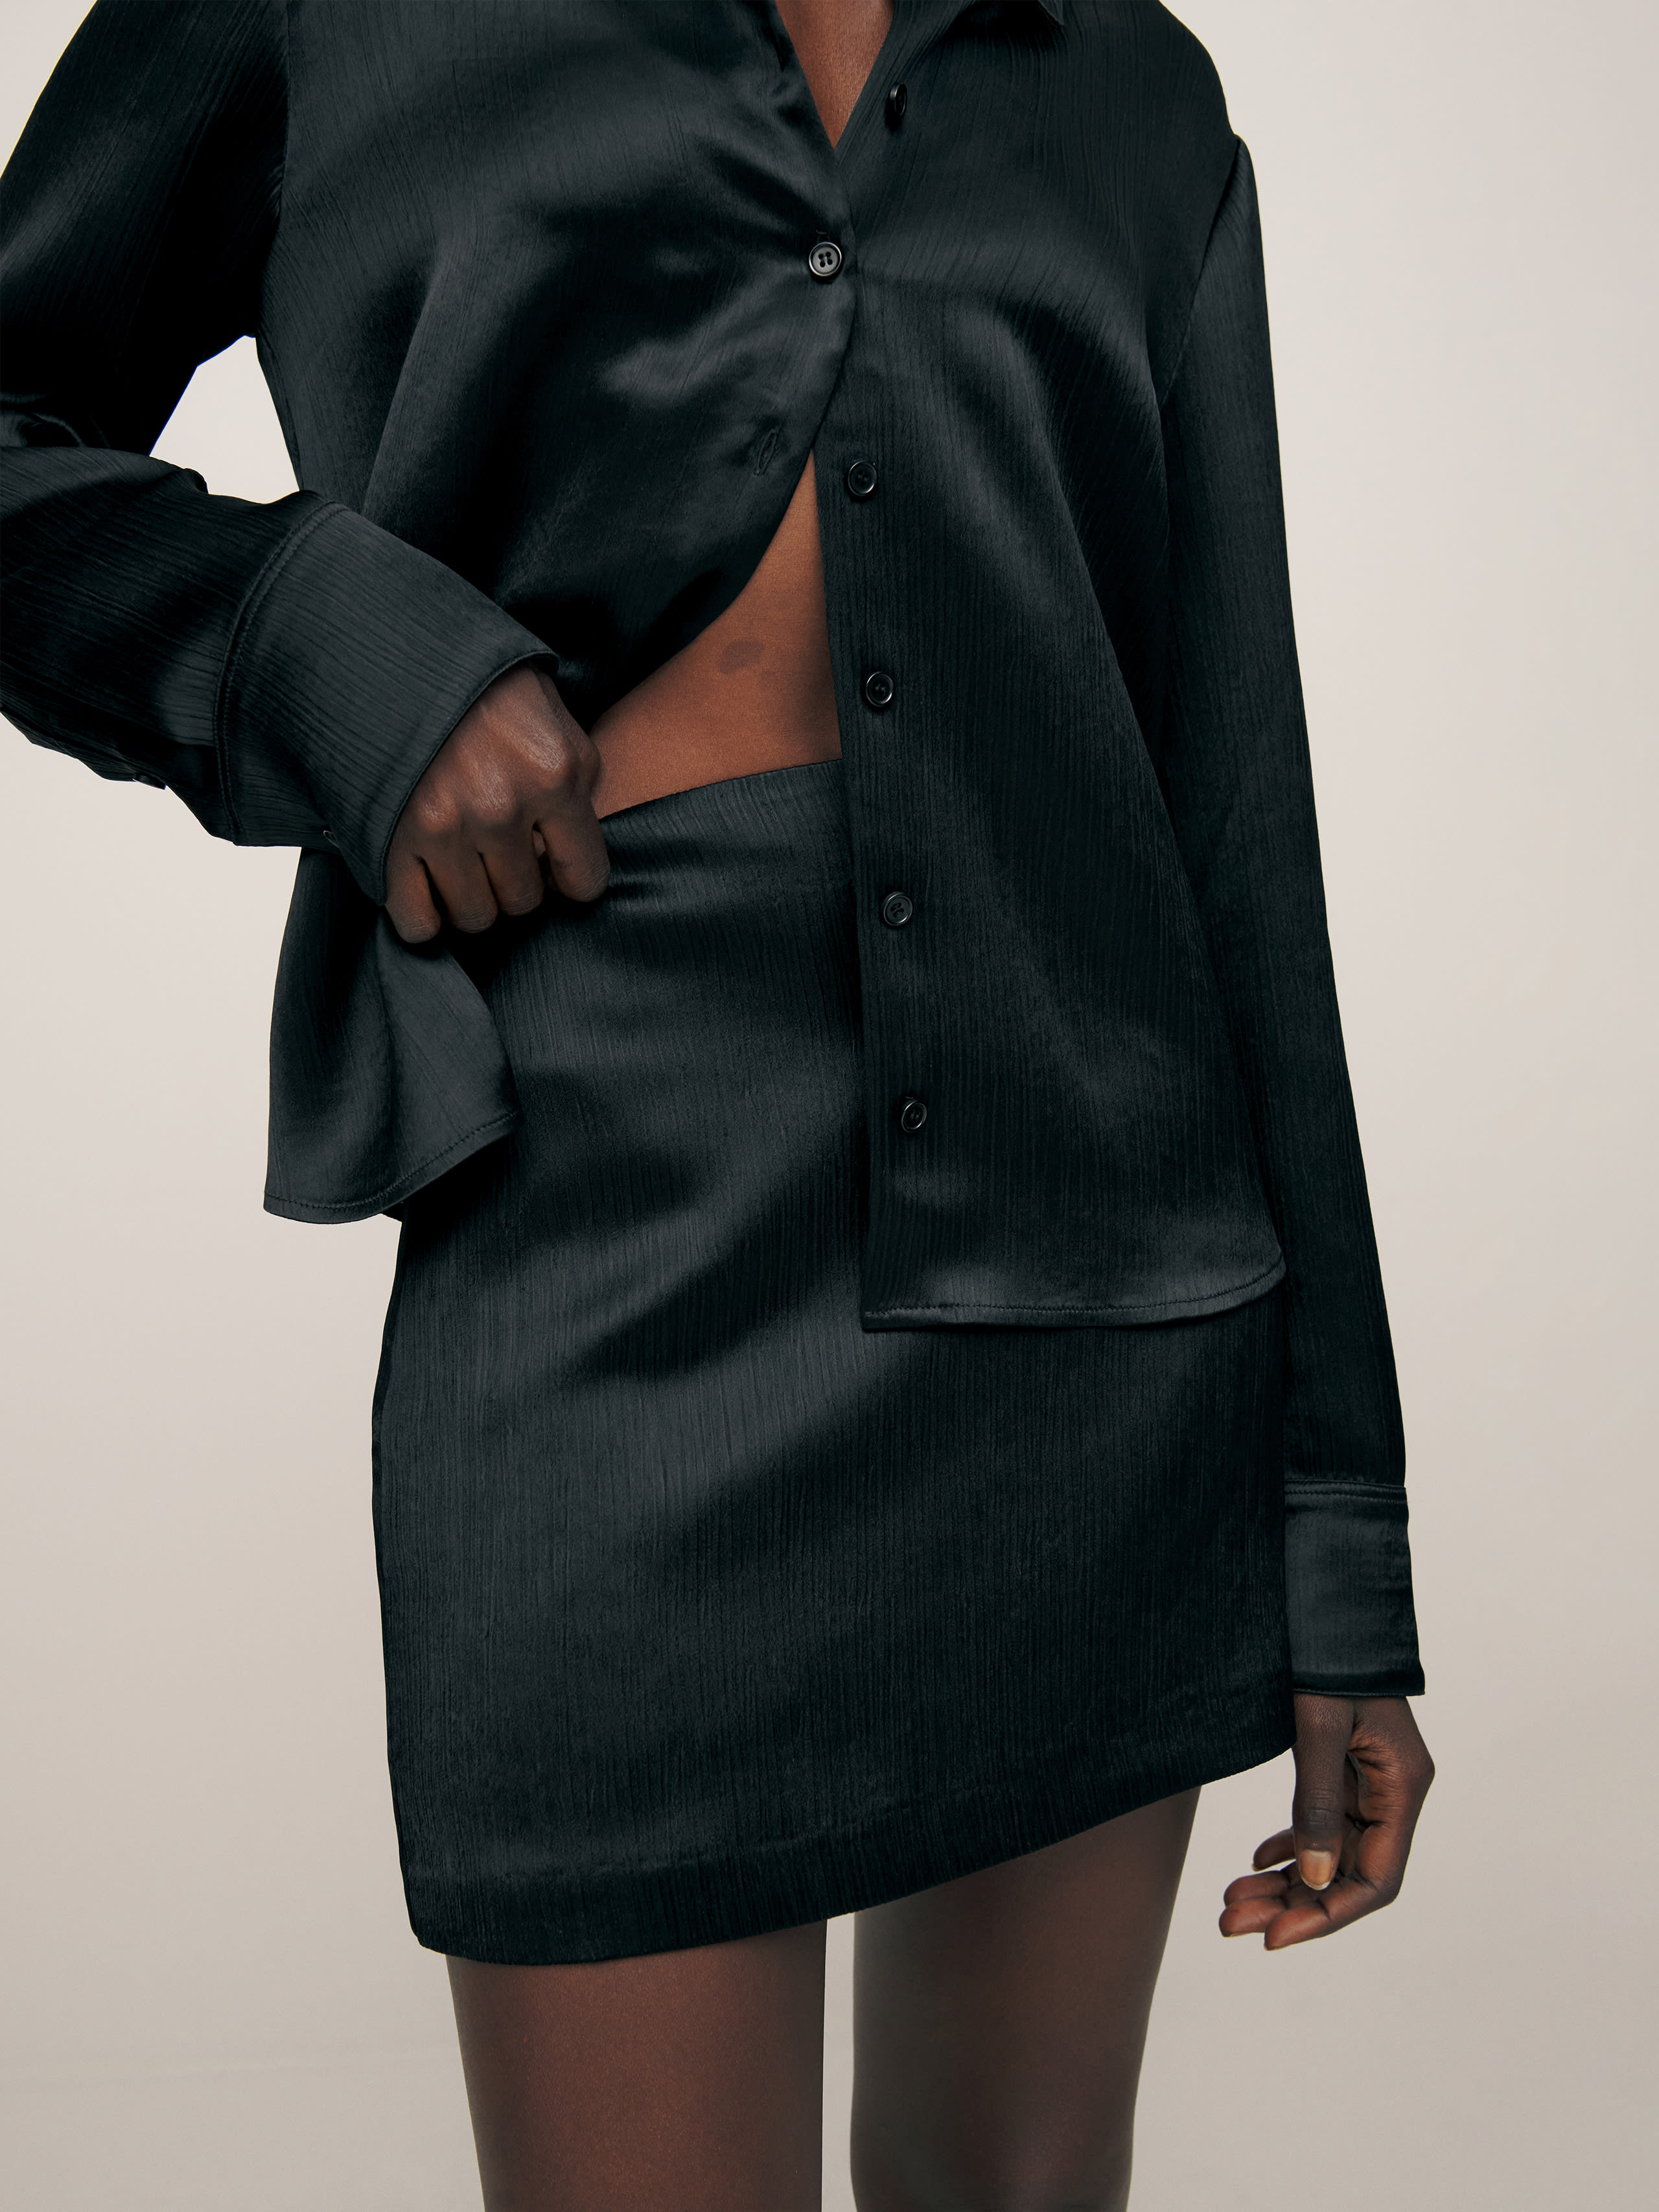 Reformation Veranda Satin Skirt In Black Crinkle